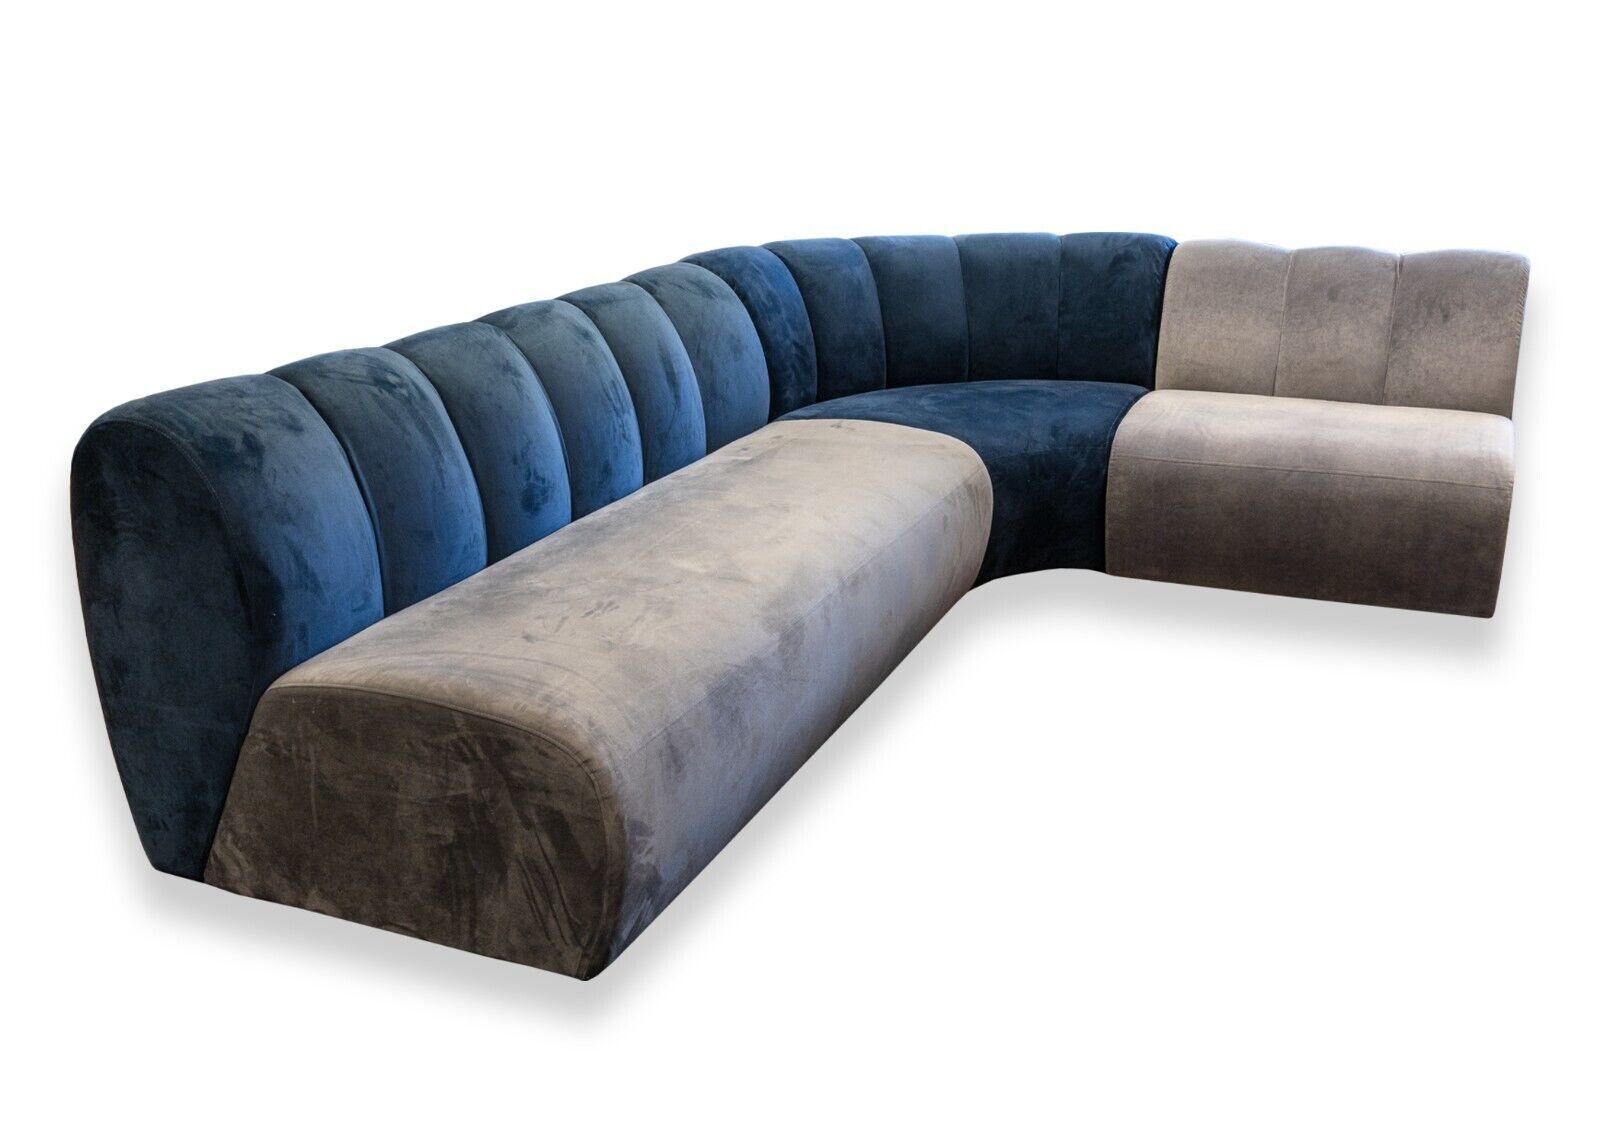 Ein modernes West Elm x Steelcase Belle Prototype Sektionssofa in Marineblau und Grau. Ein atemberaubendes und einzigartiges mehrfarbiges 3er-Sofa. Dieses Stück ist ein Prototyp, 1 von nur 4, des Belle-Sofas. Dieses Möbelstück zeichnet sich durch